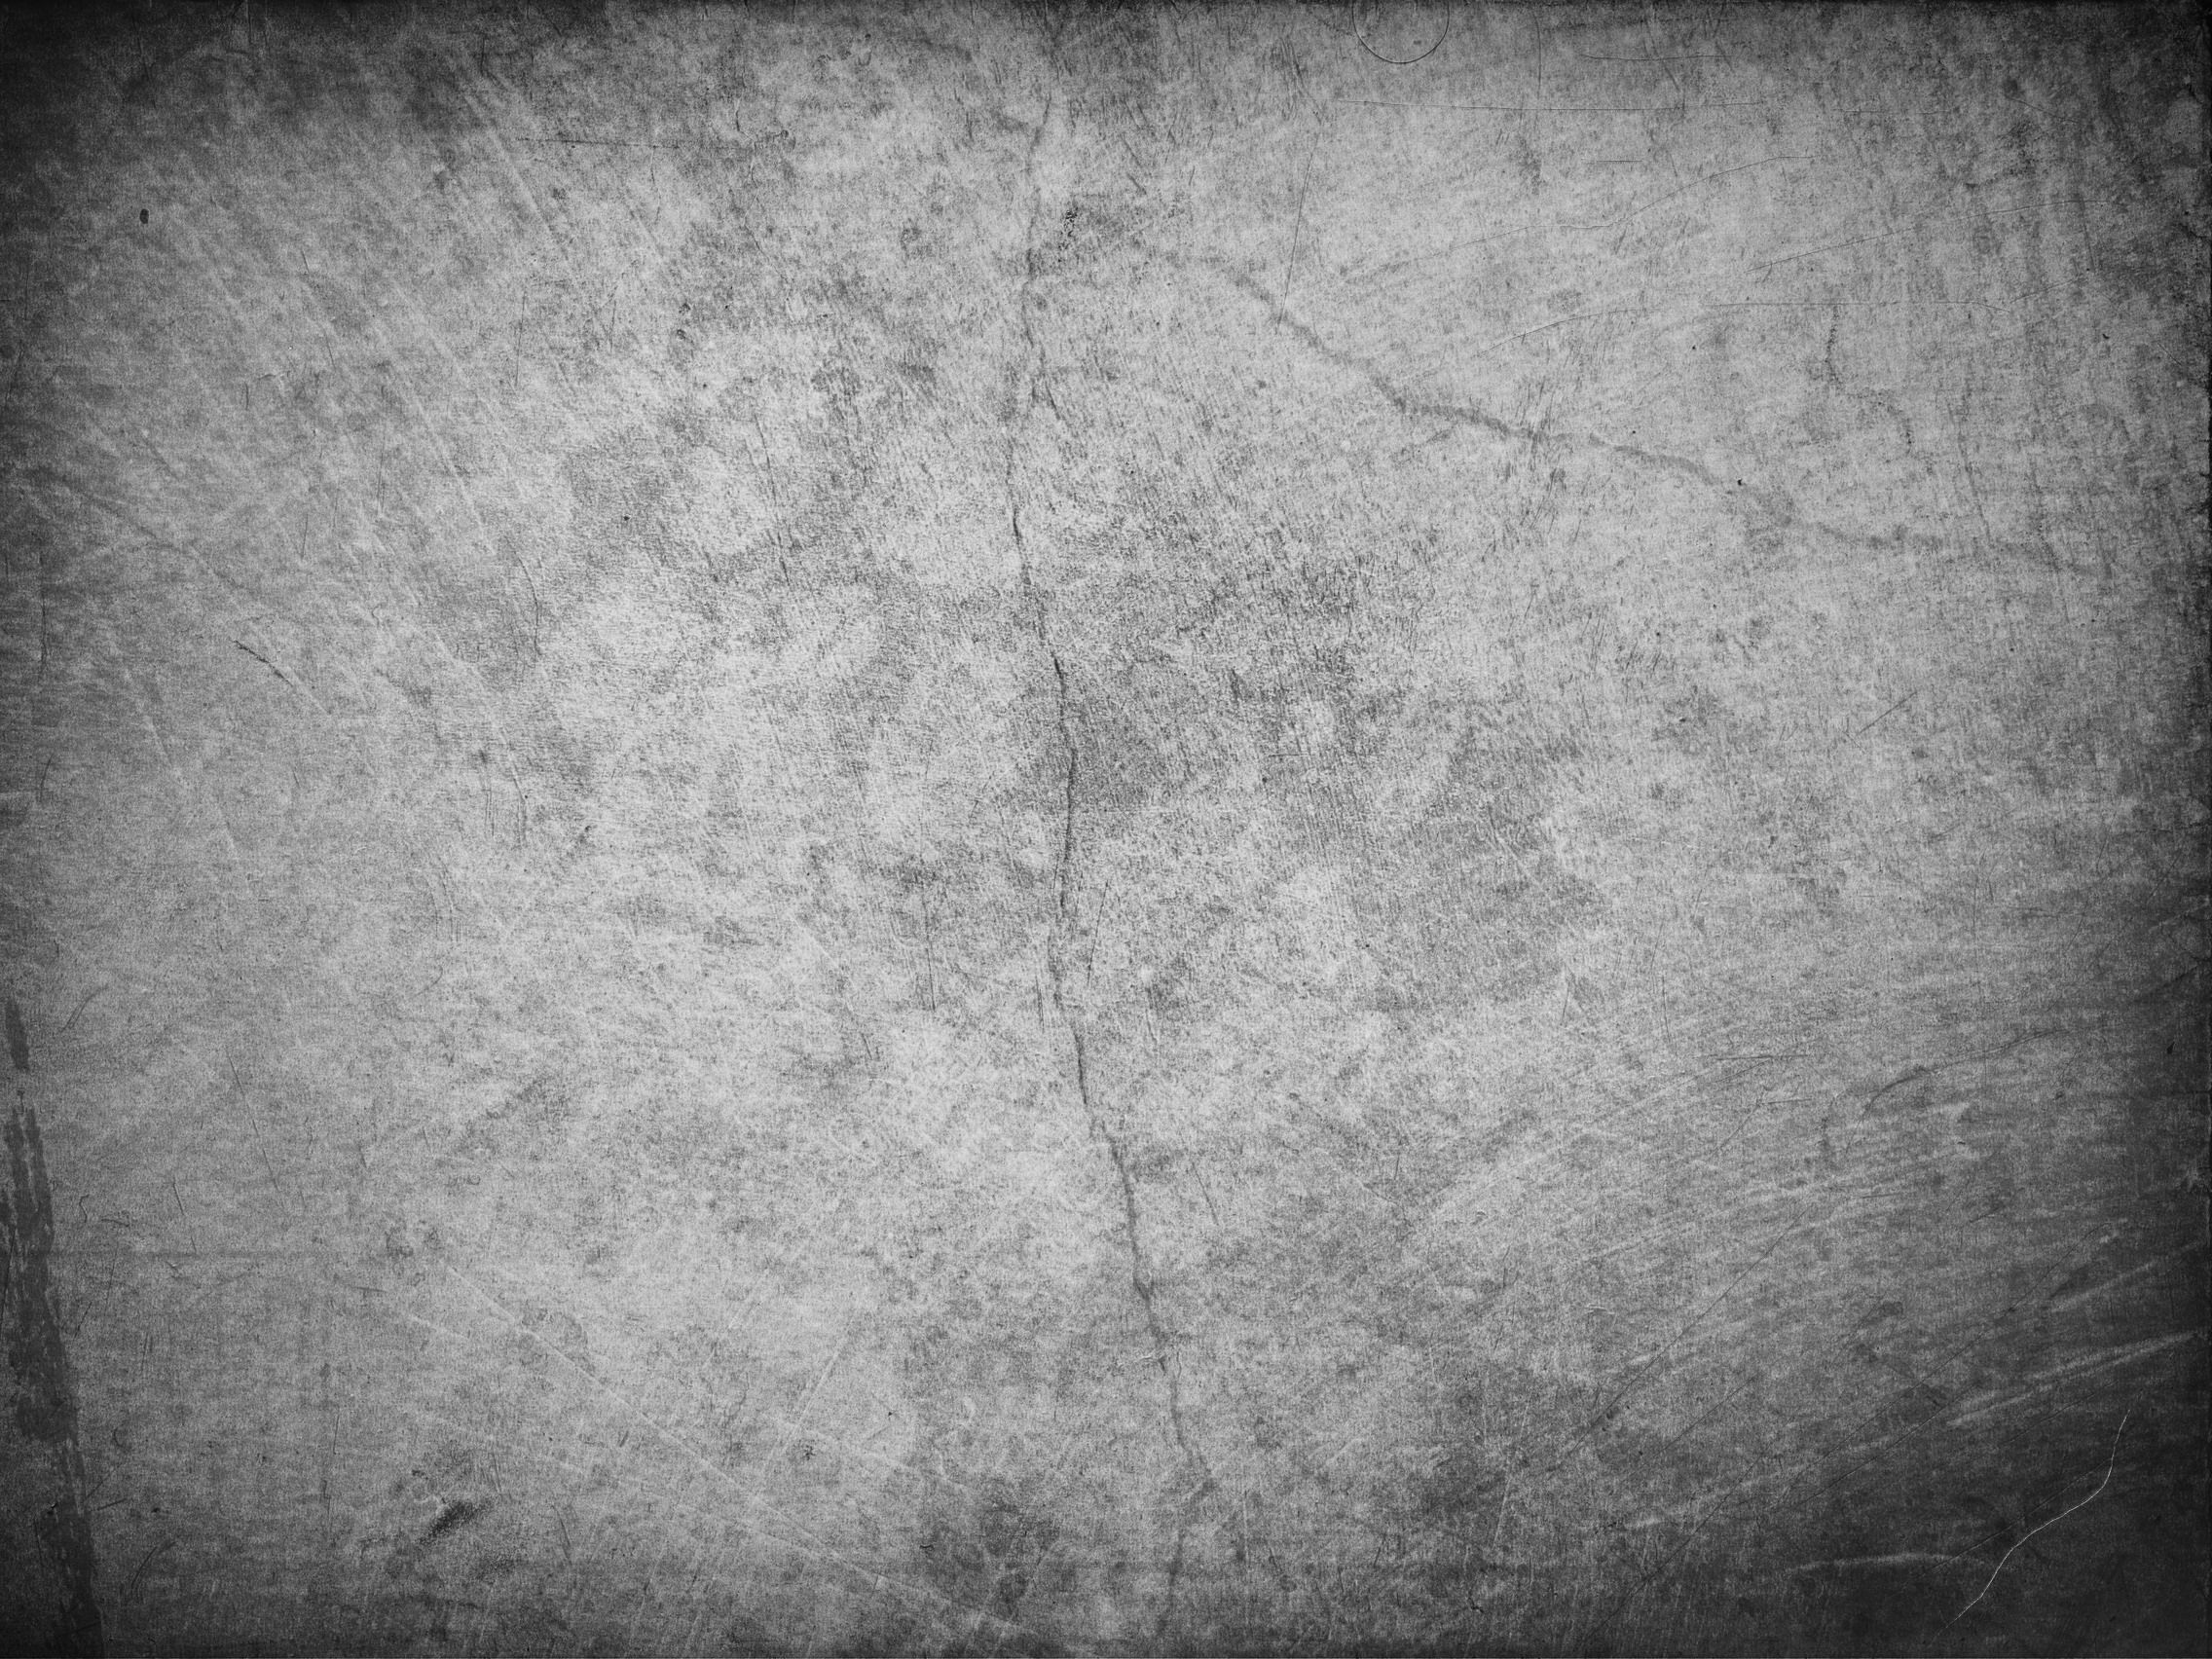 24247) Grunge Textured Widescreen Desktop Wallpaper - WalOps.com